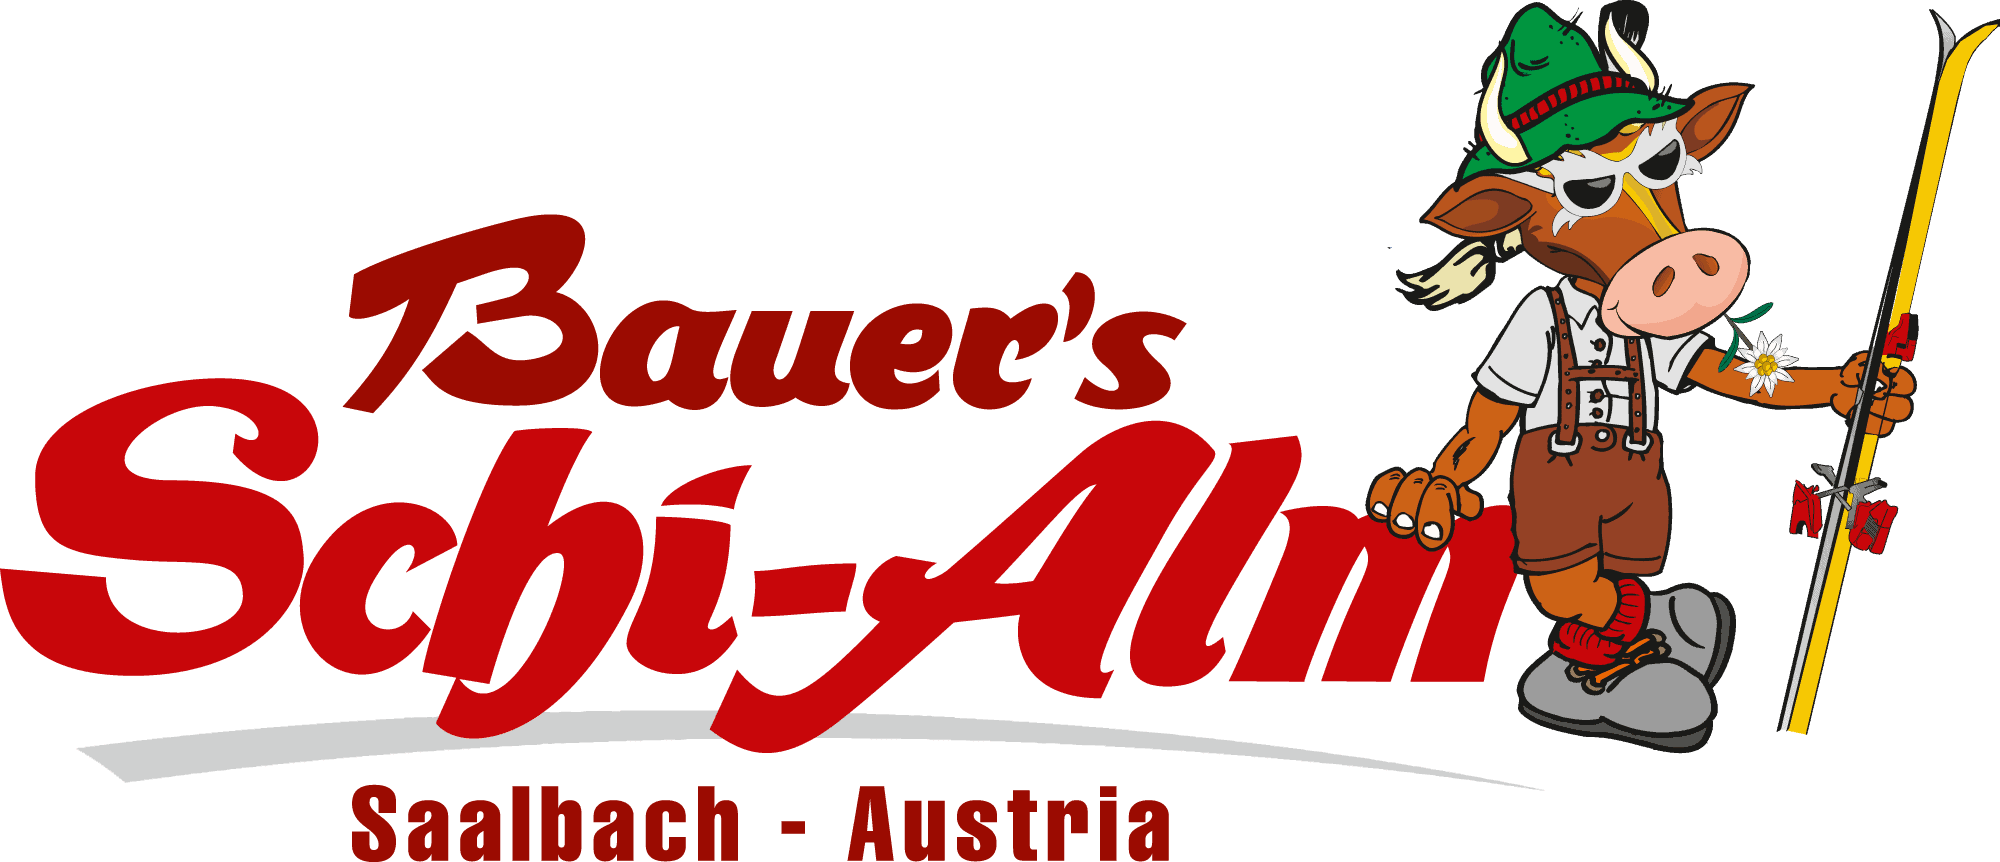 Bauer's Schi Alm | Sochor Touristik OG